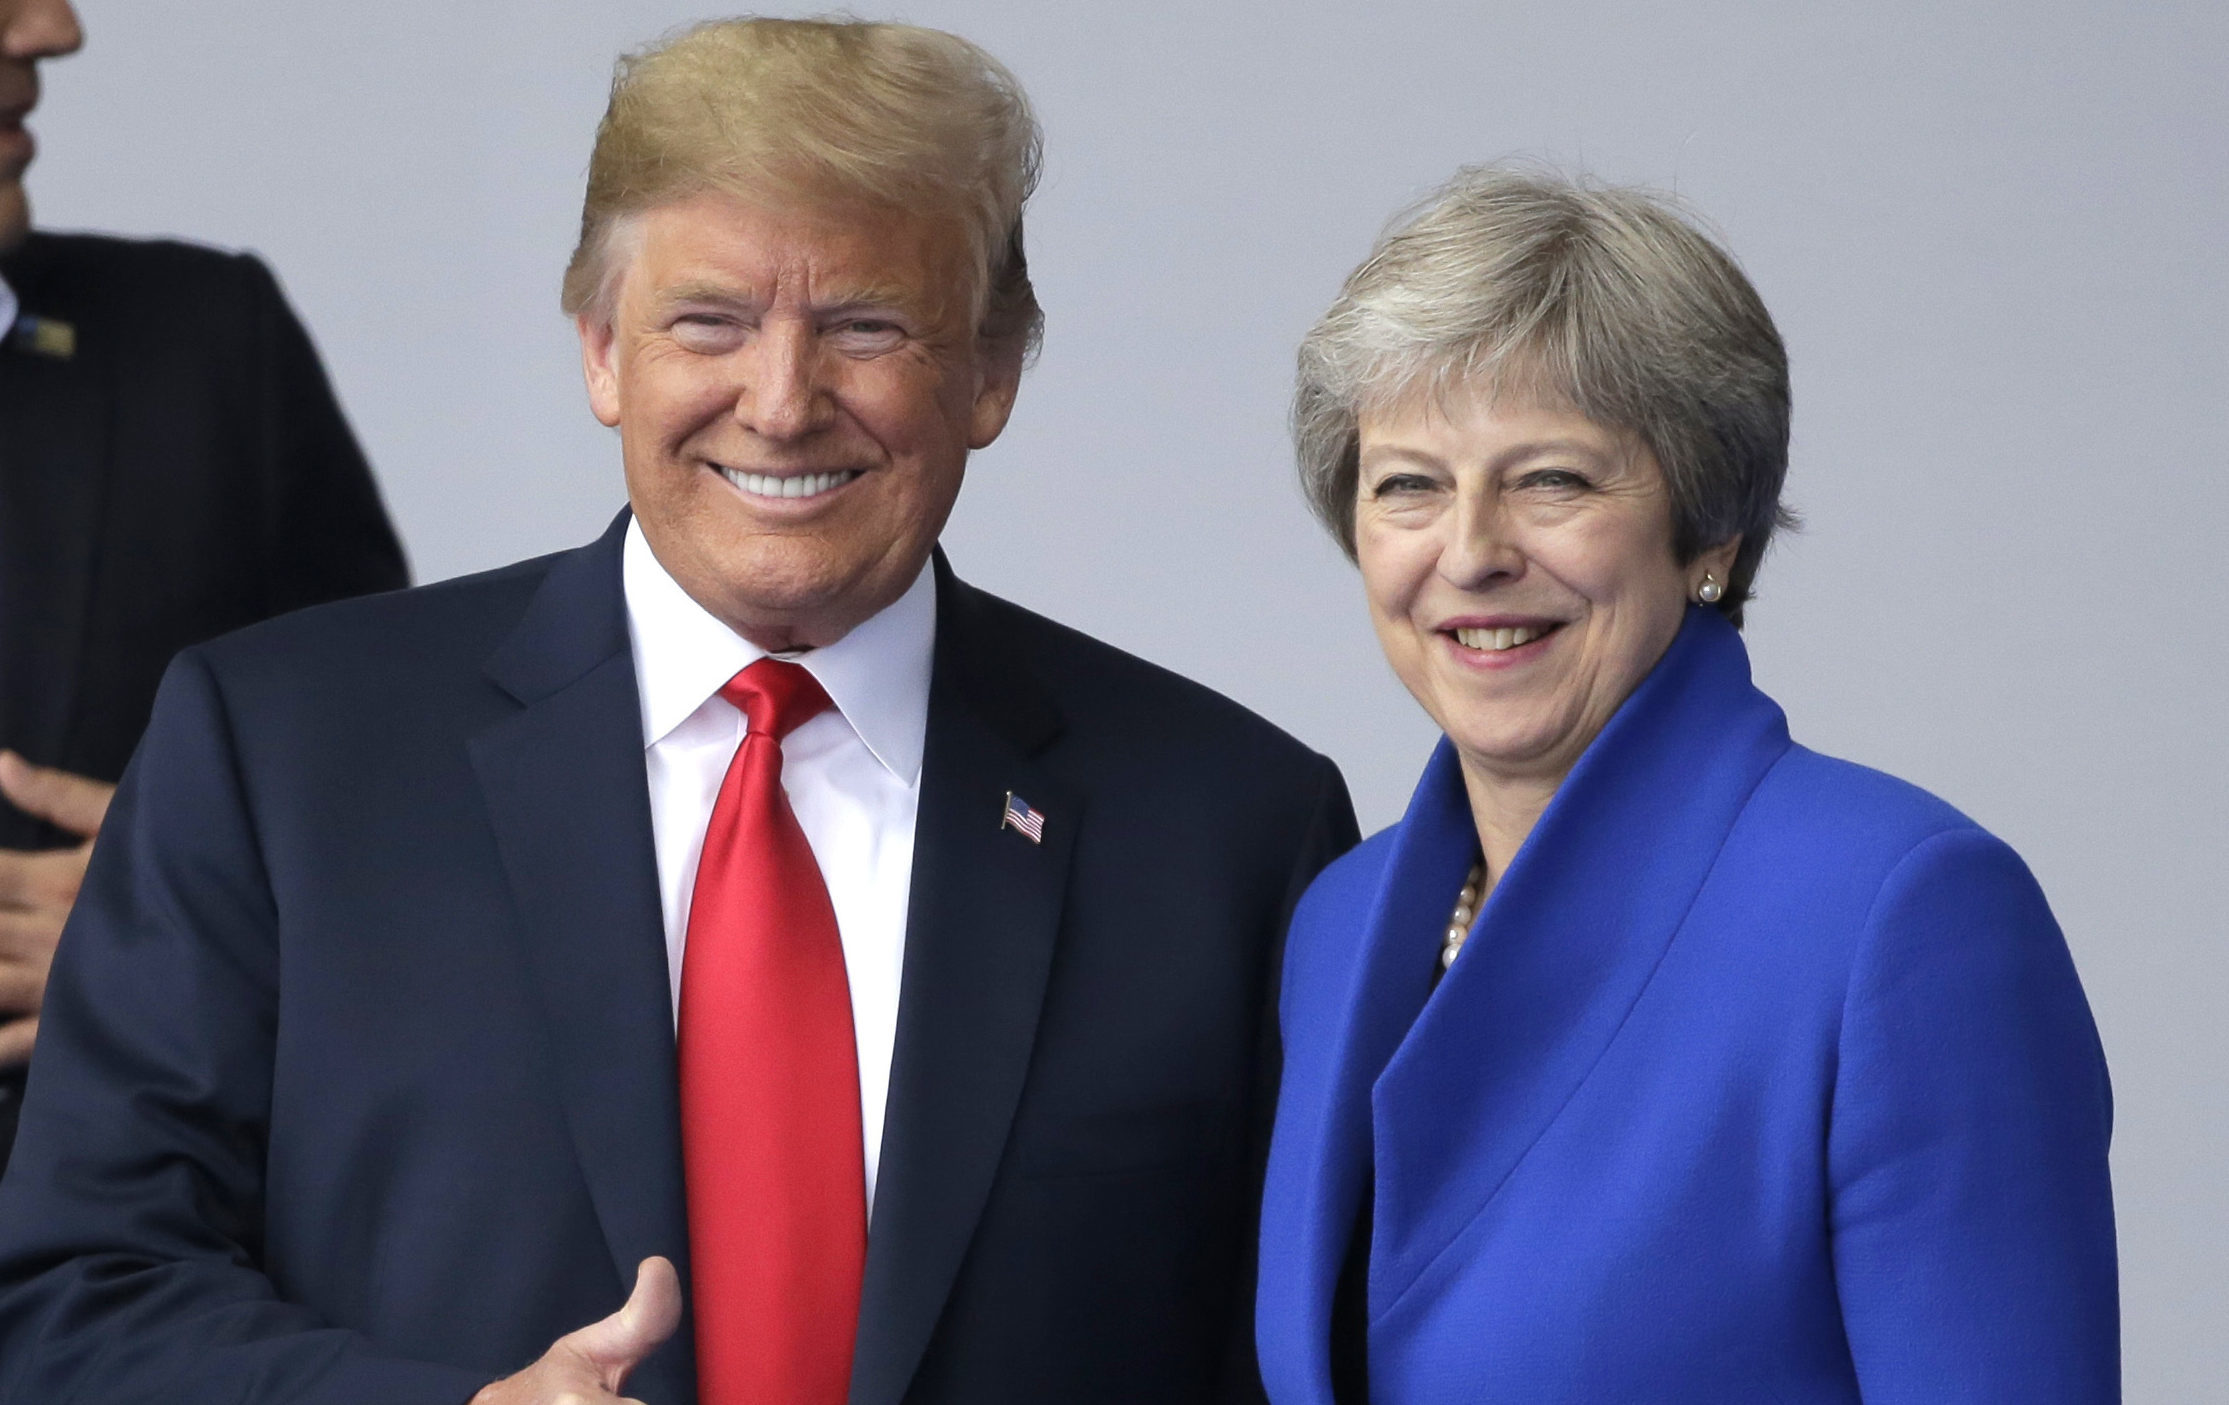 Donald Trump and Theresa May (AP Photo/Markus Schreiber)